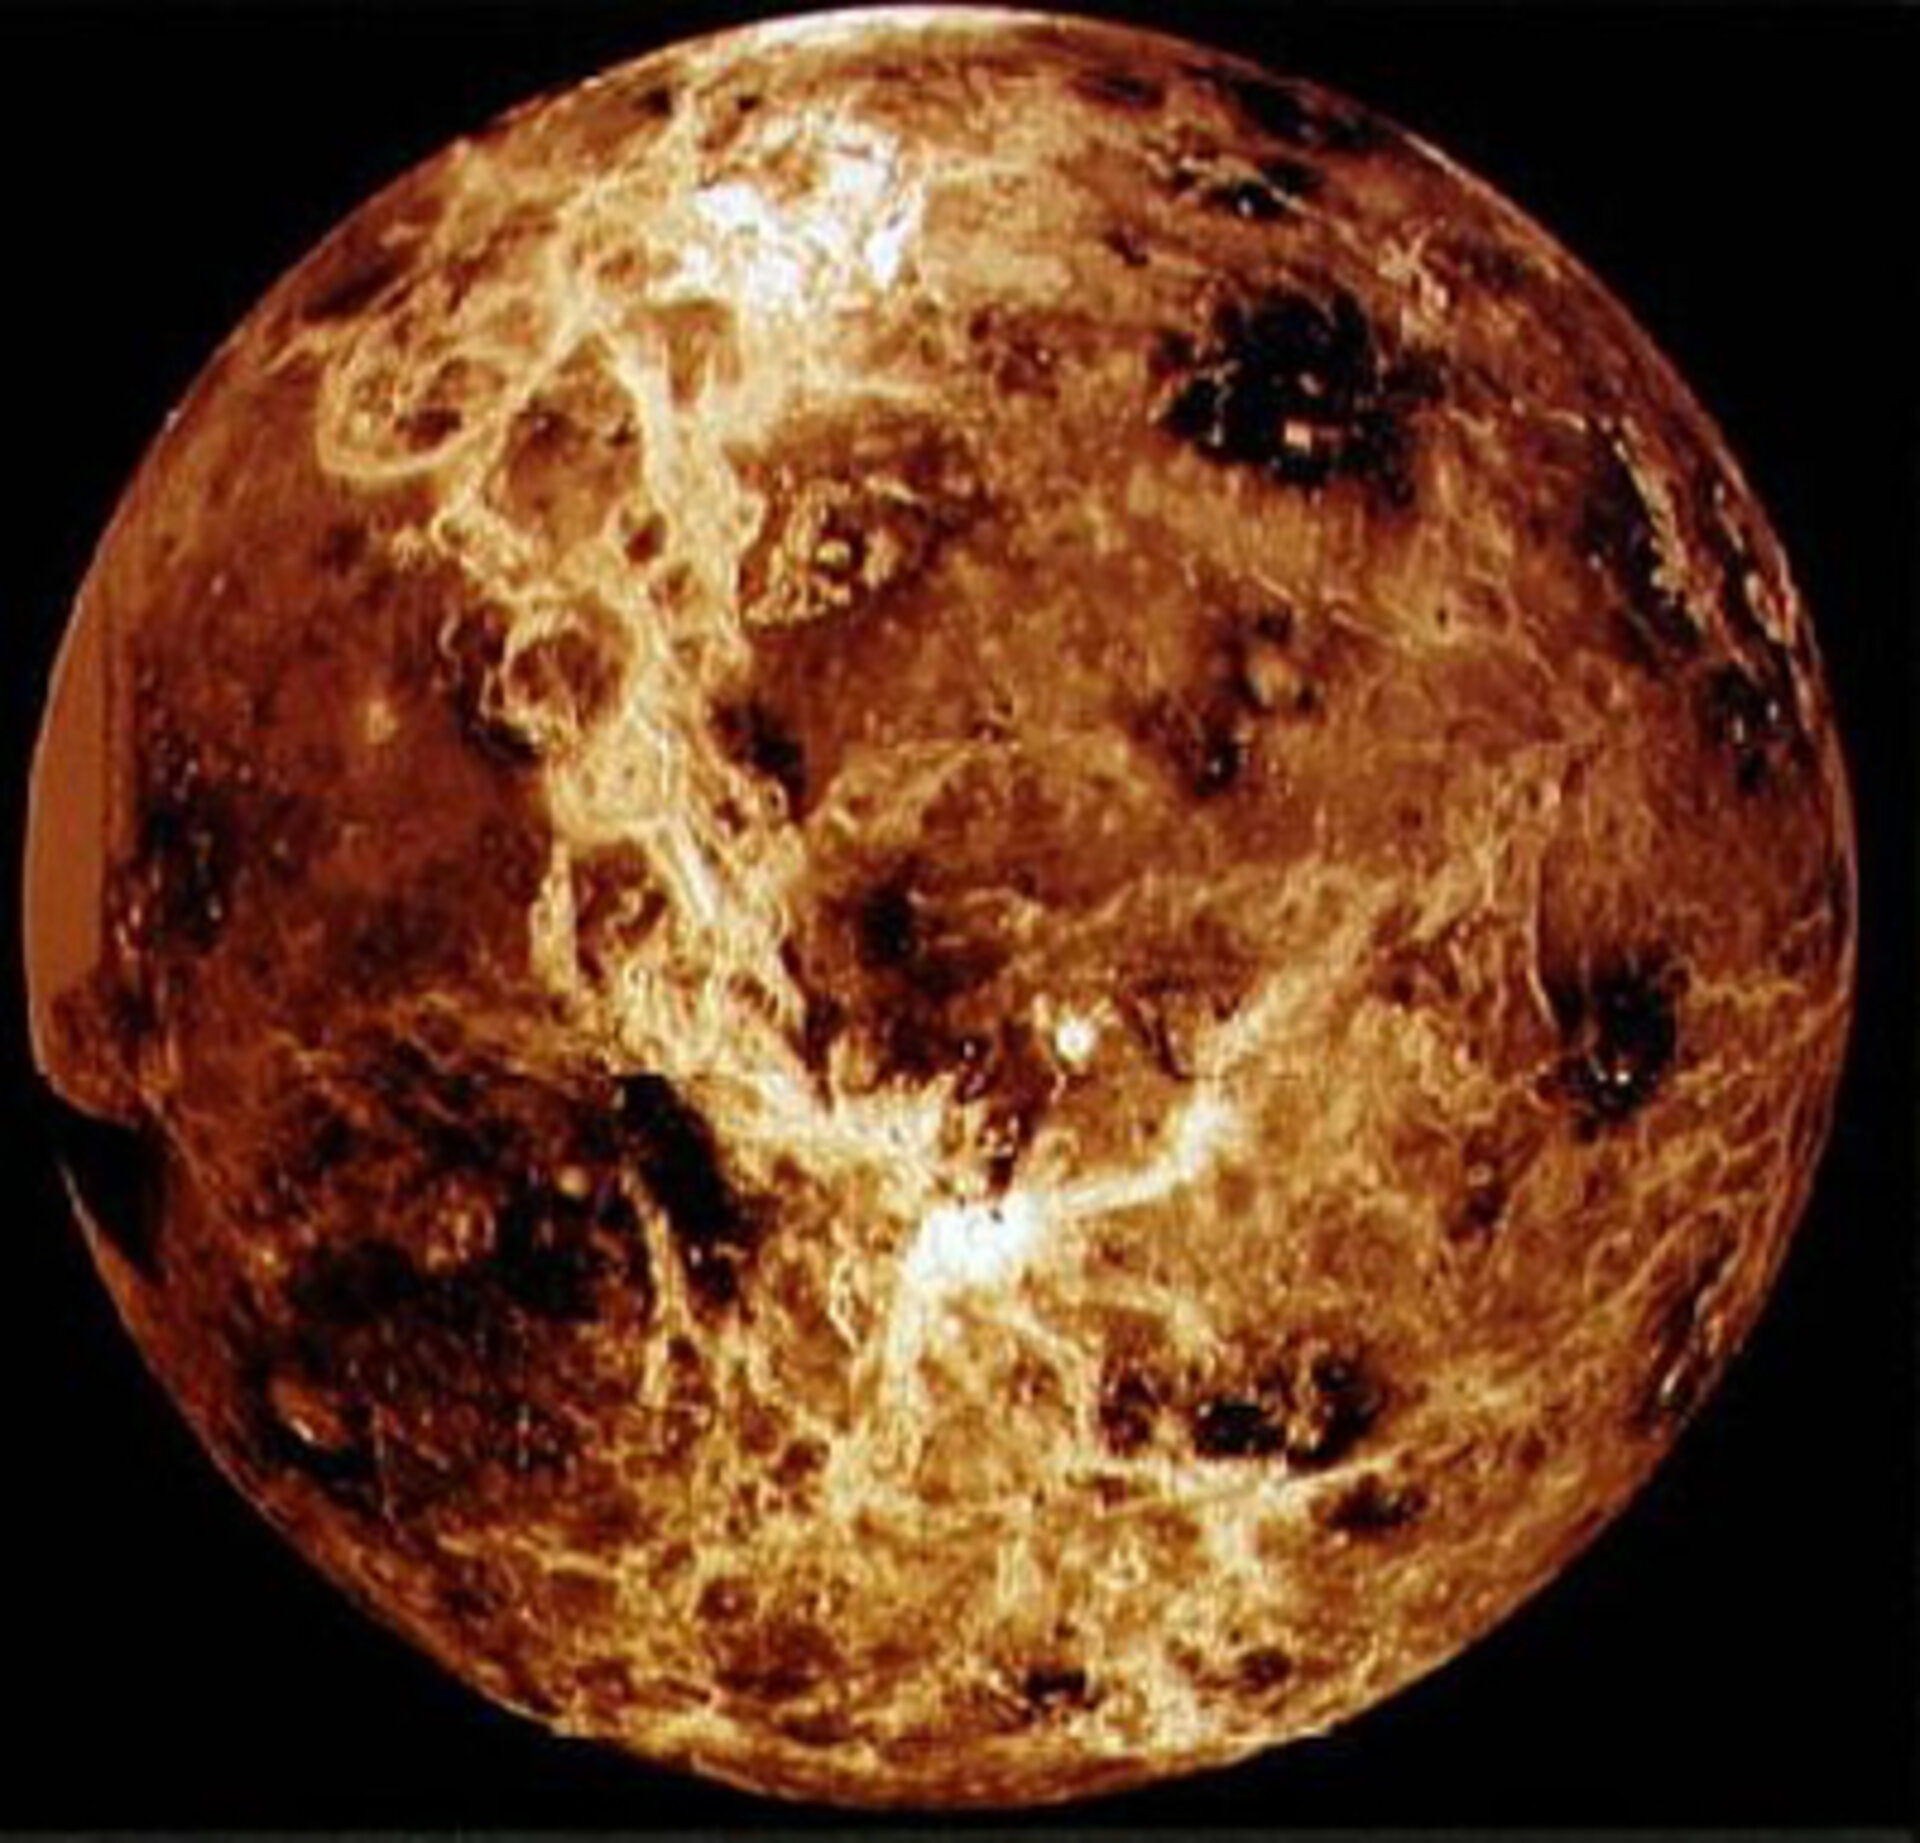 Venus ihres Schleiers beraubt: Magellan-Radaraufnahme